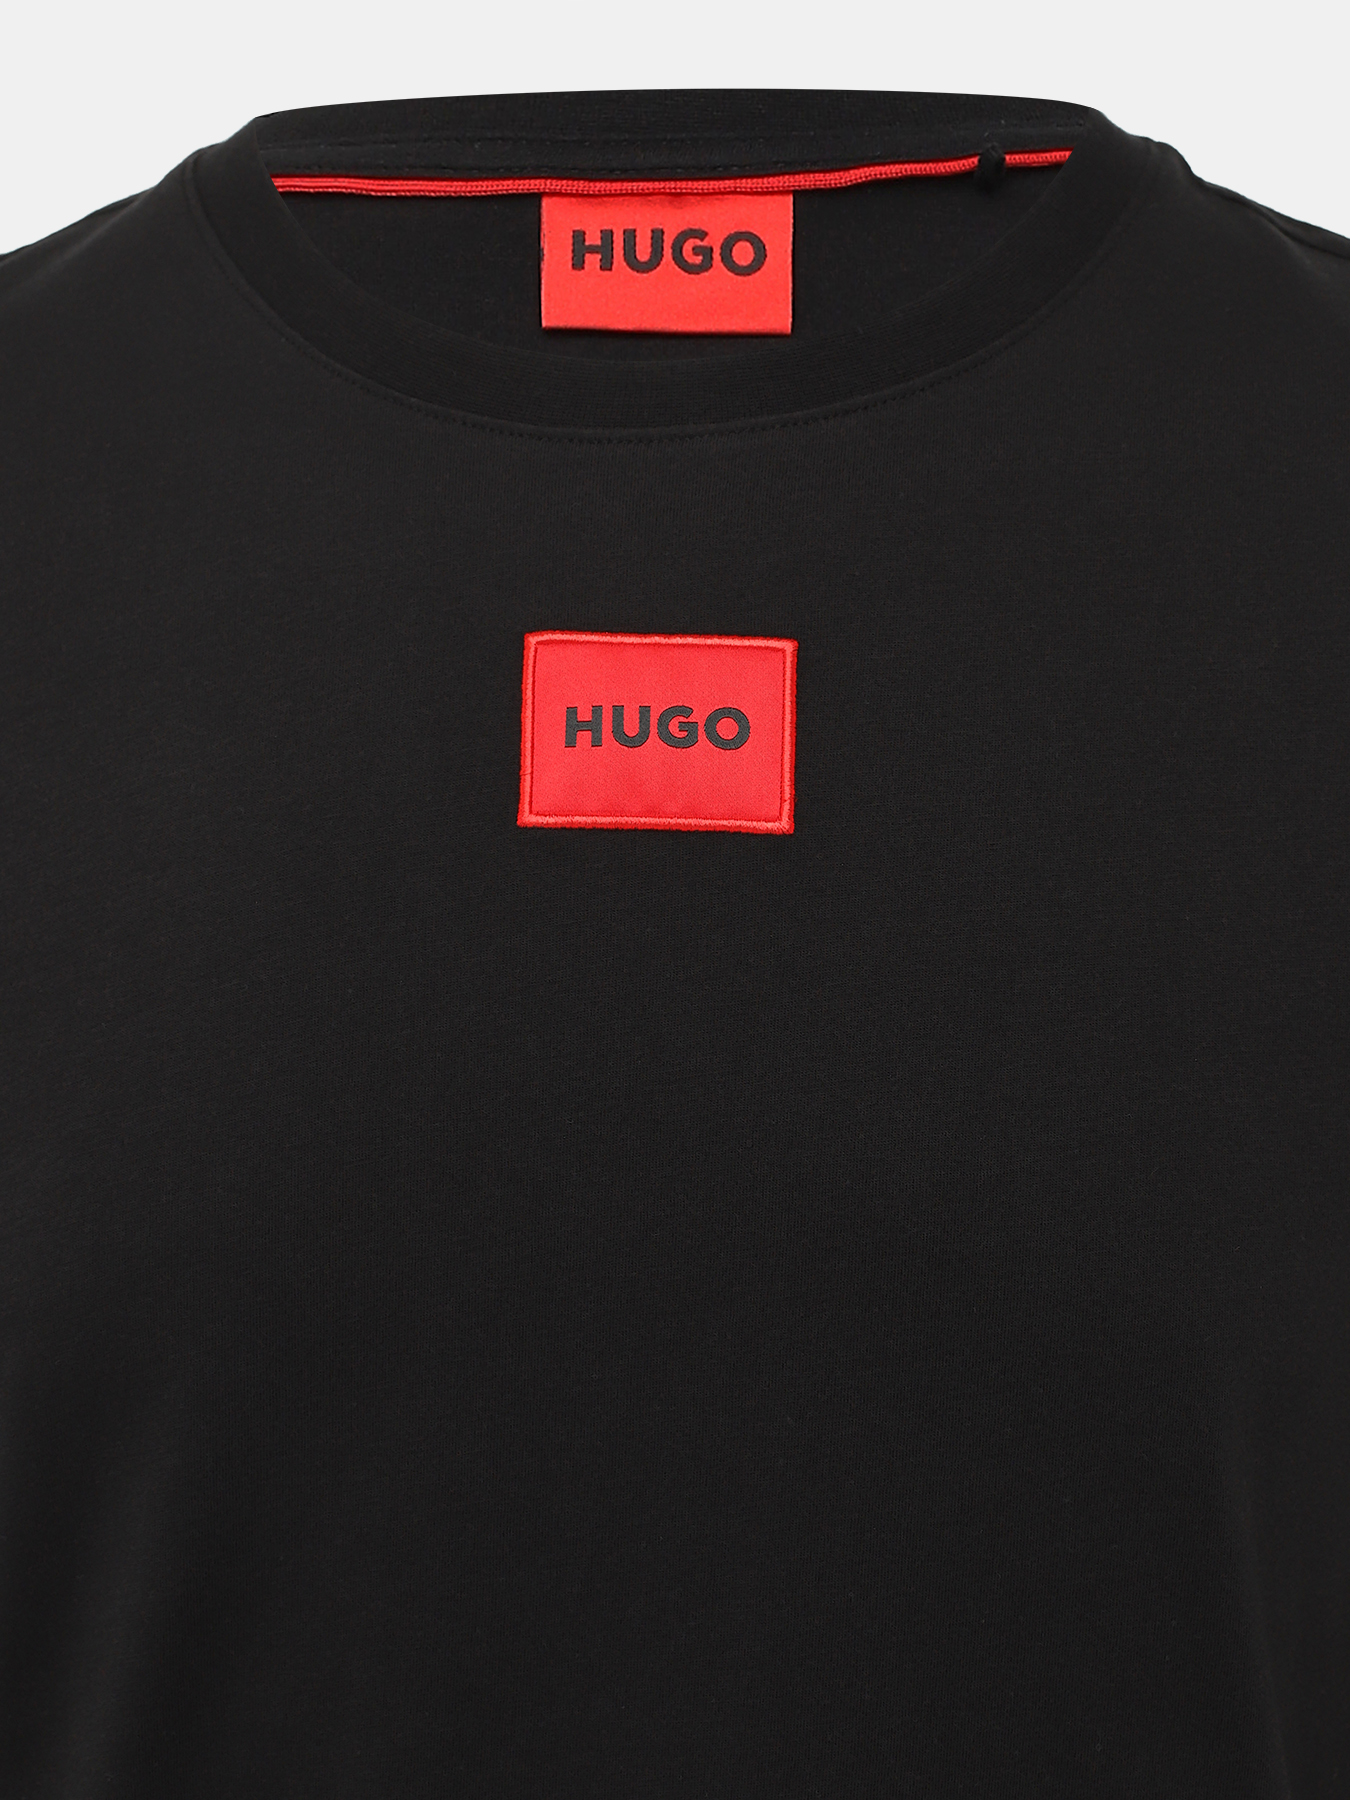 Лонгслив Diragolo HUGO 438651-046, цвет черный, размер 54-56 - фото 2